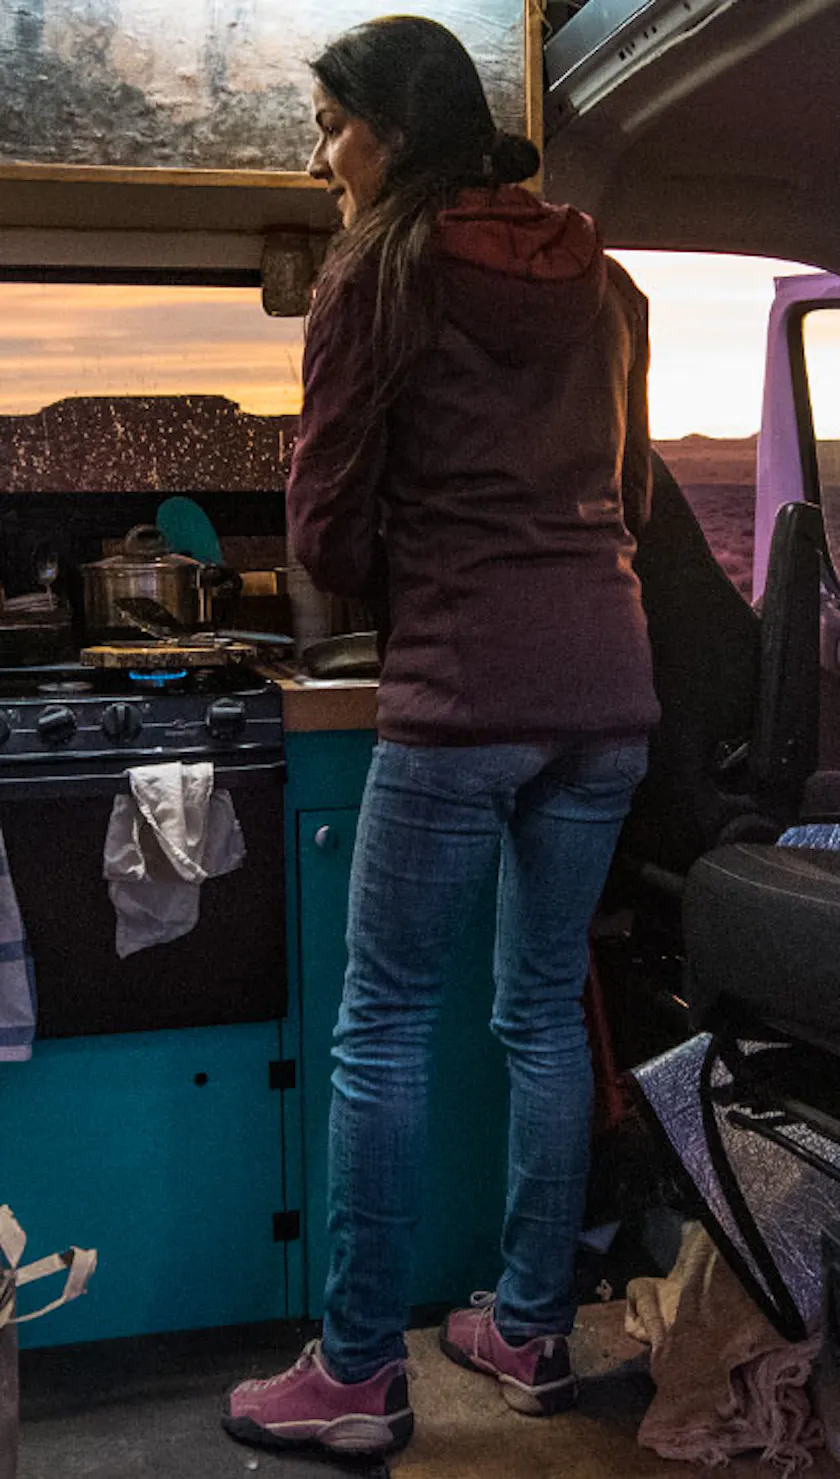 woman making dinner in her campervan